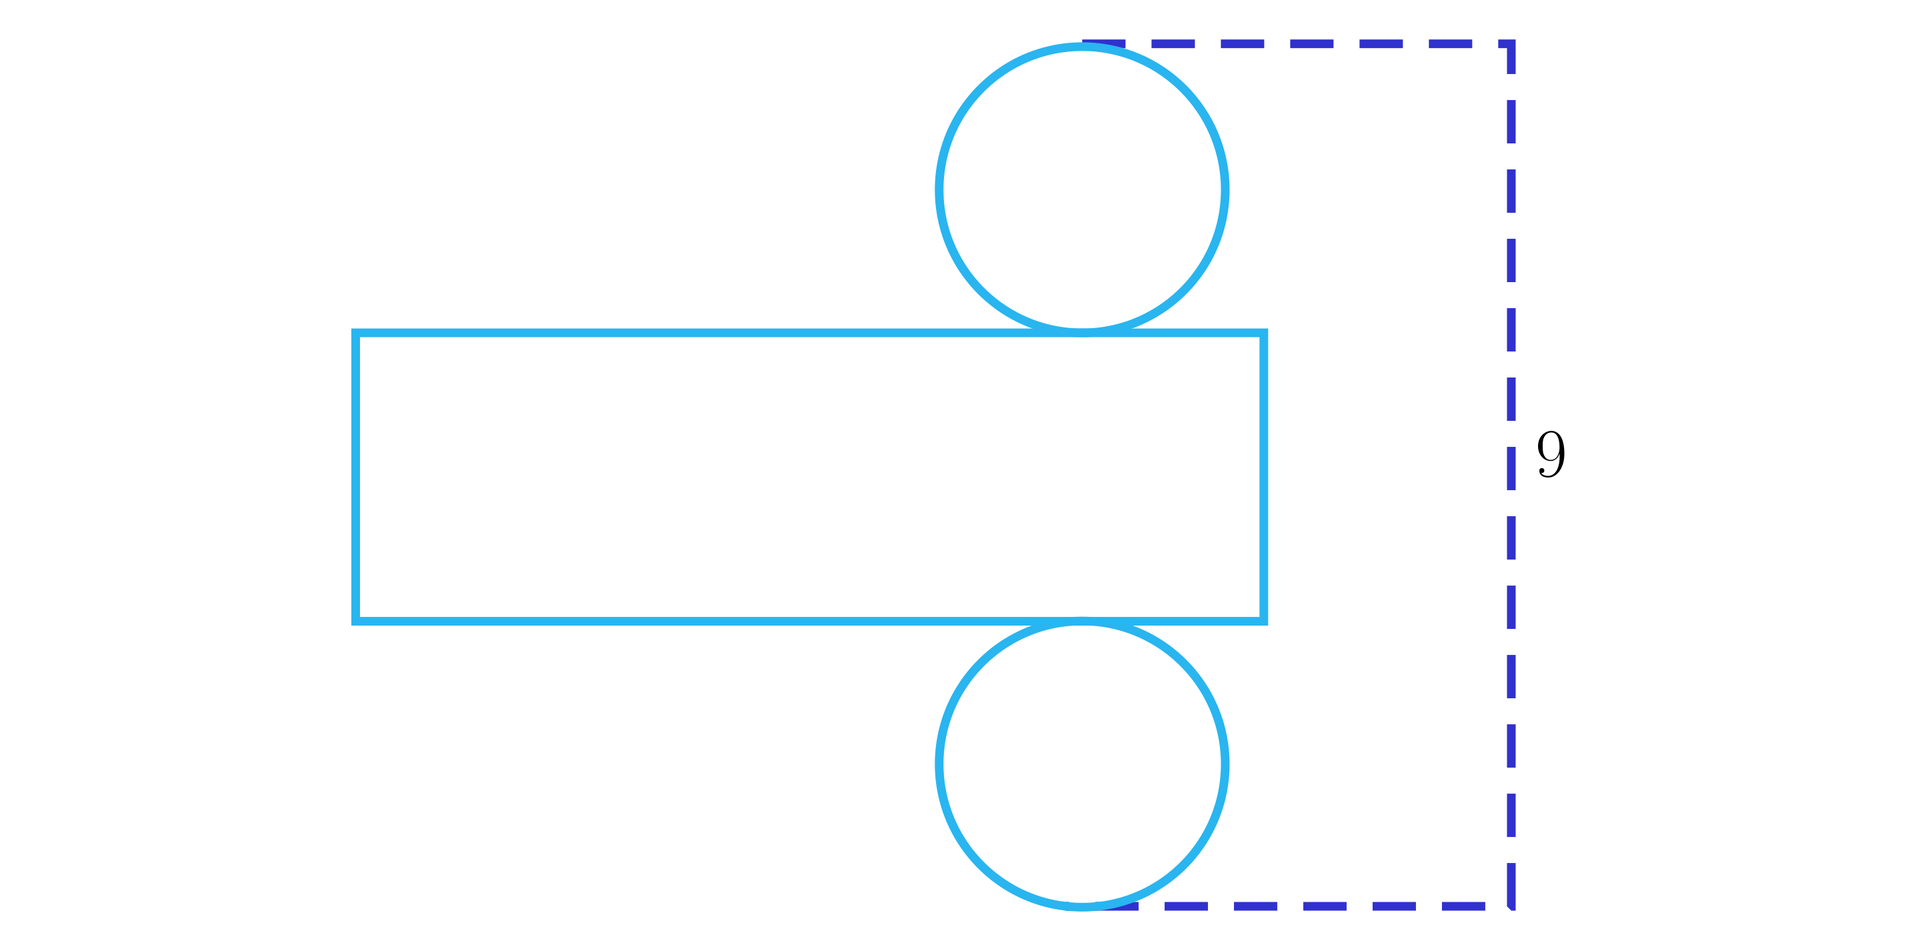 Ilustracja przedstawia siatkę walca składającą się z oraz dwóch kół stycznych do dłuższych przeciwległych boków prostokąta. Na ilustracji zaznaczony został także odcinek będący prostopadły do dłuższego boku prostokąta, łączący dwa krańcowe najbardziej oddalone od siebie punkty na obu okręgach. Odcinek ten ma długość dziewięć.